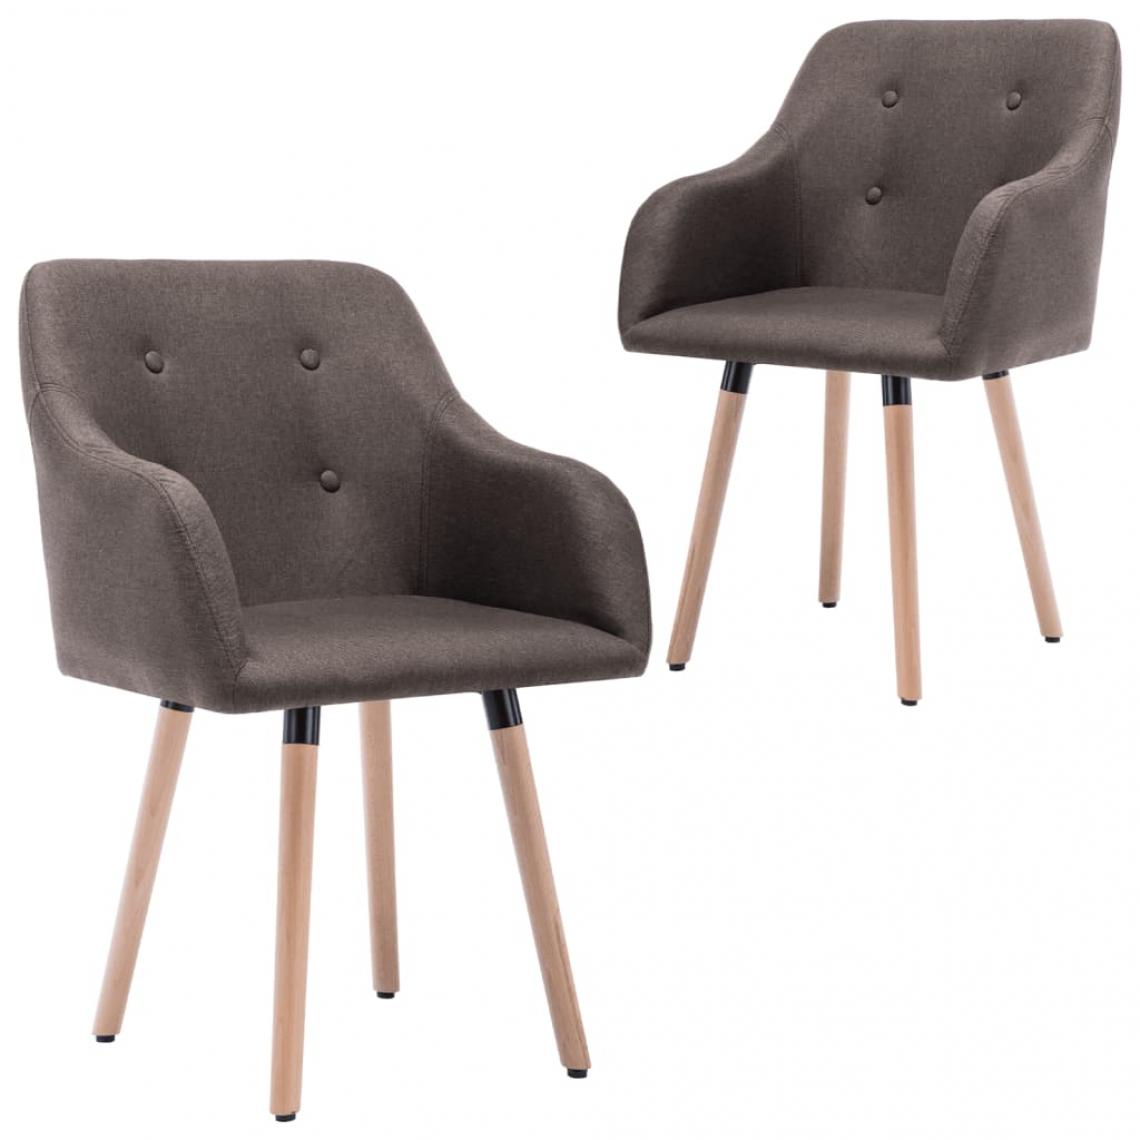 Decoshop26 - Lot de 2 chaises de salle à manger cuisine design moderne tissu taupe CDS021057 - Chaises